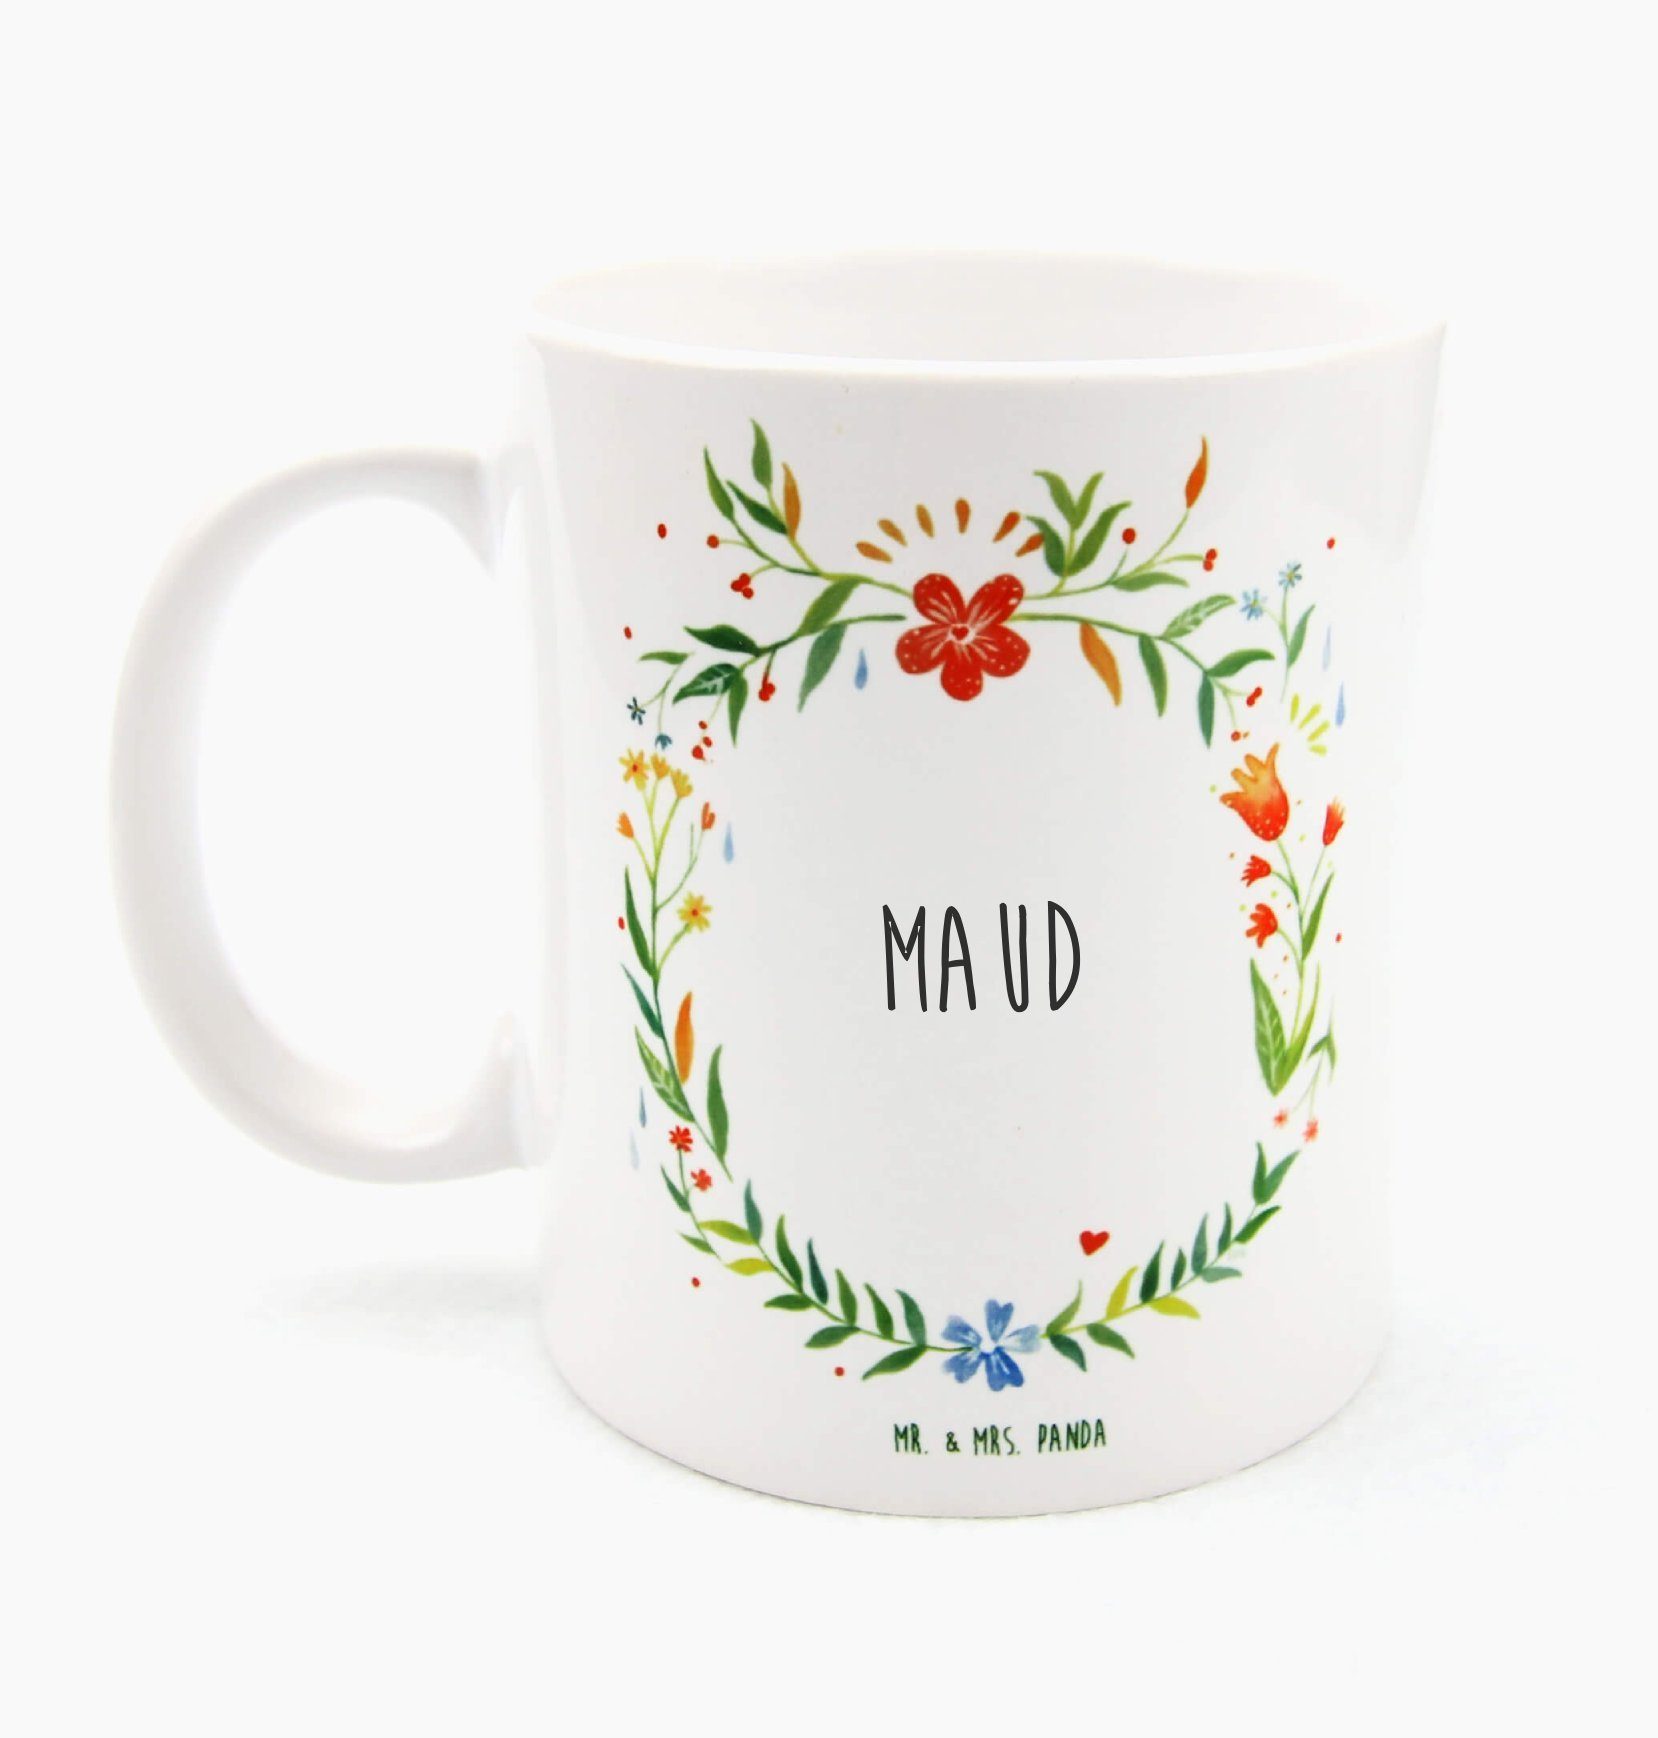 Mr. & Mrs. Panda Tasse Maud - Geschenk, Kaffeetasse, Tasse Motive, Kaffeebecher, Geschenk Ta, Keramik